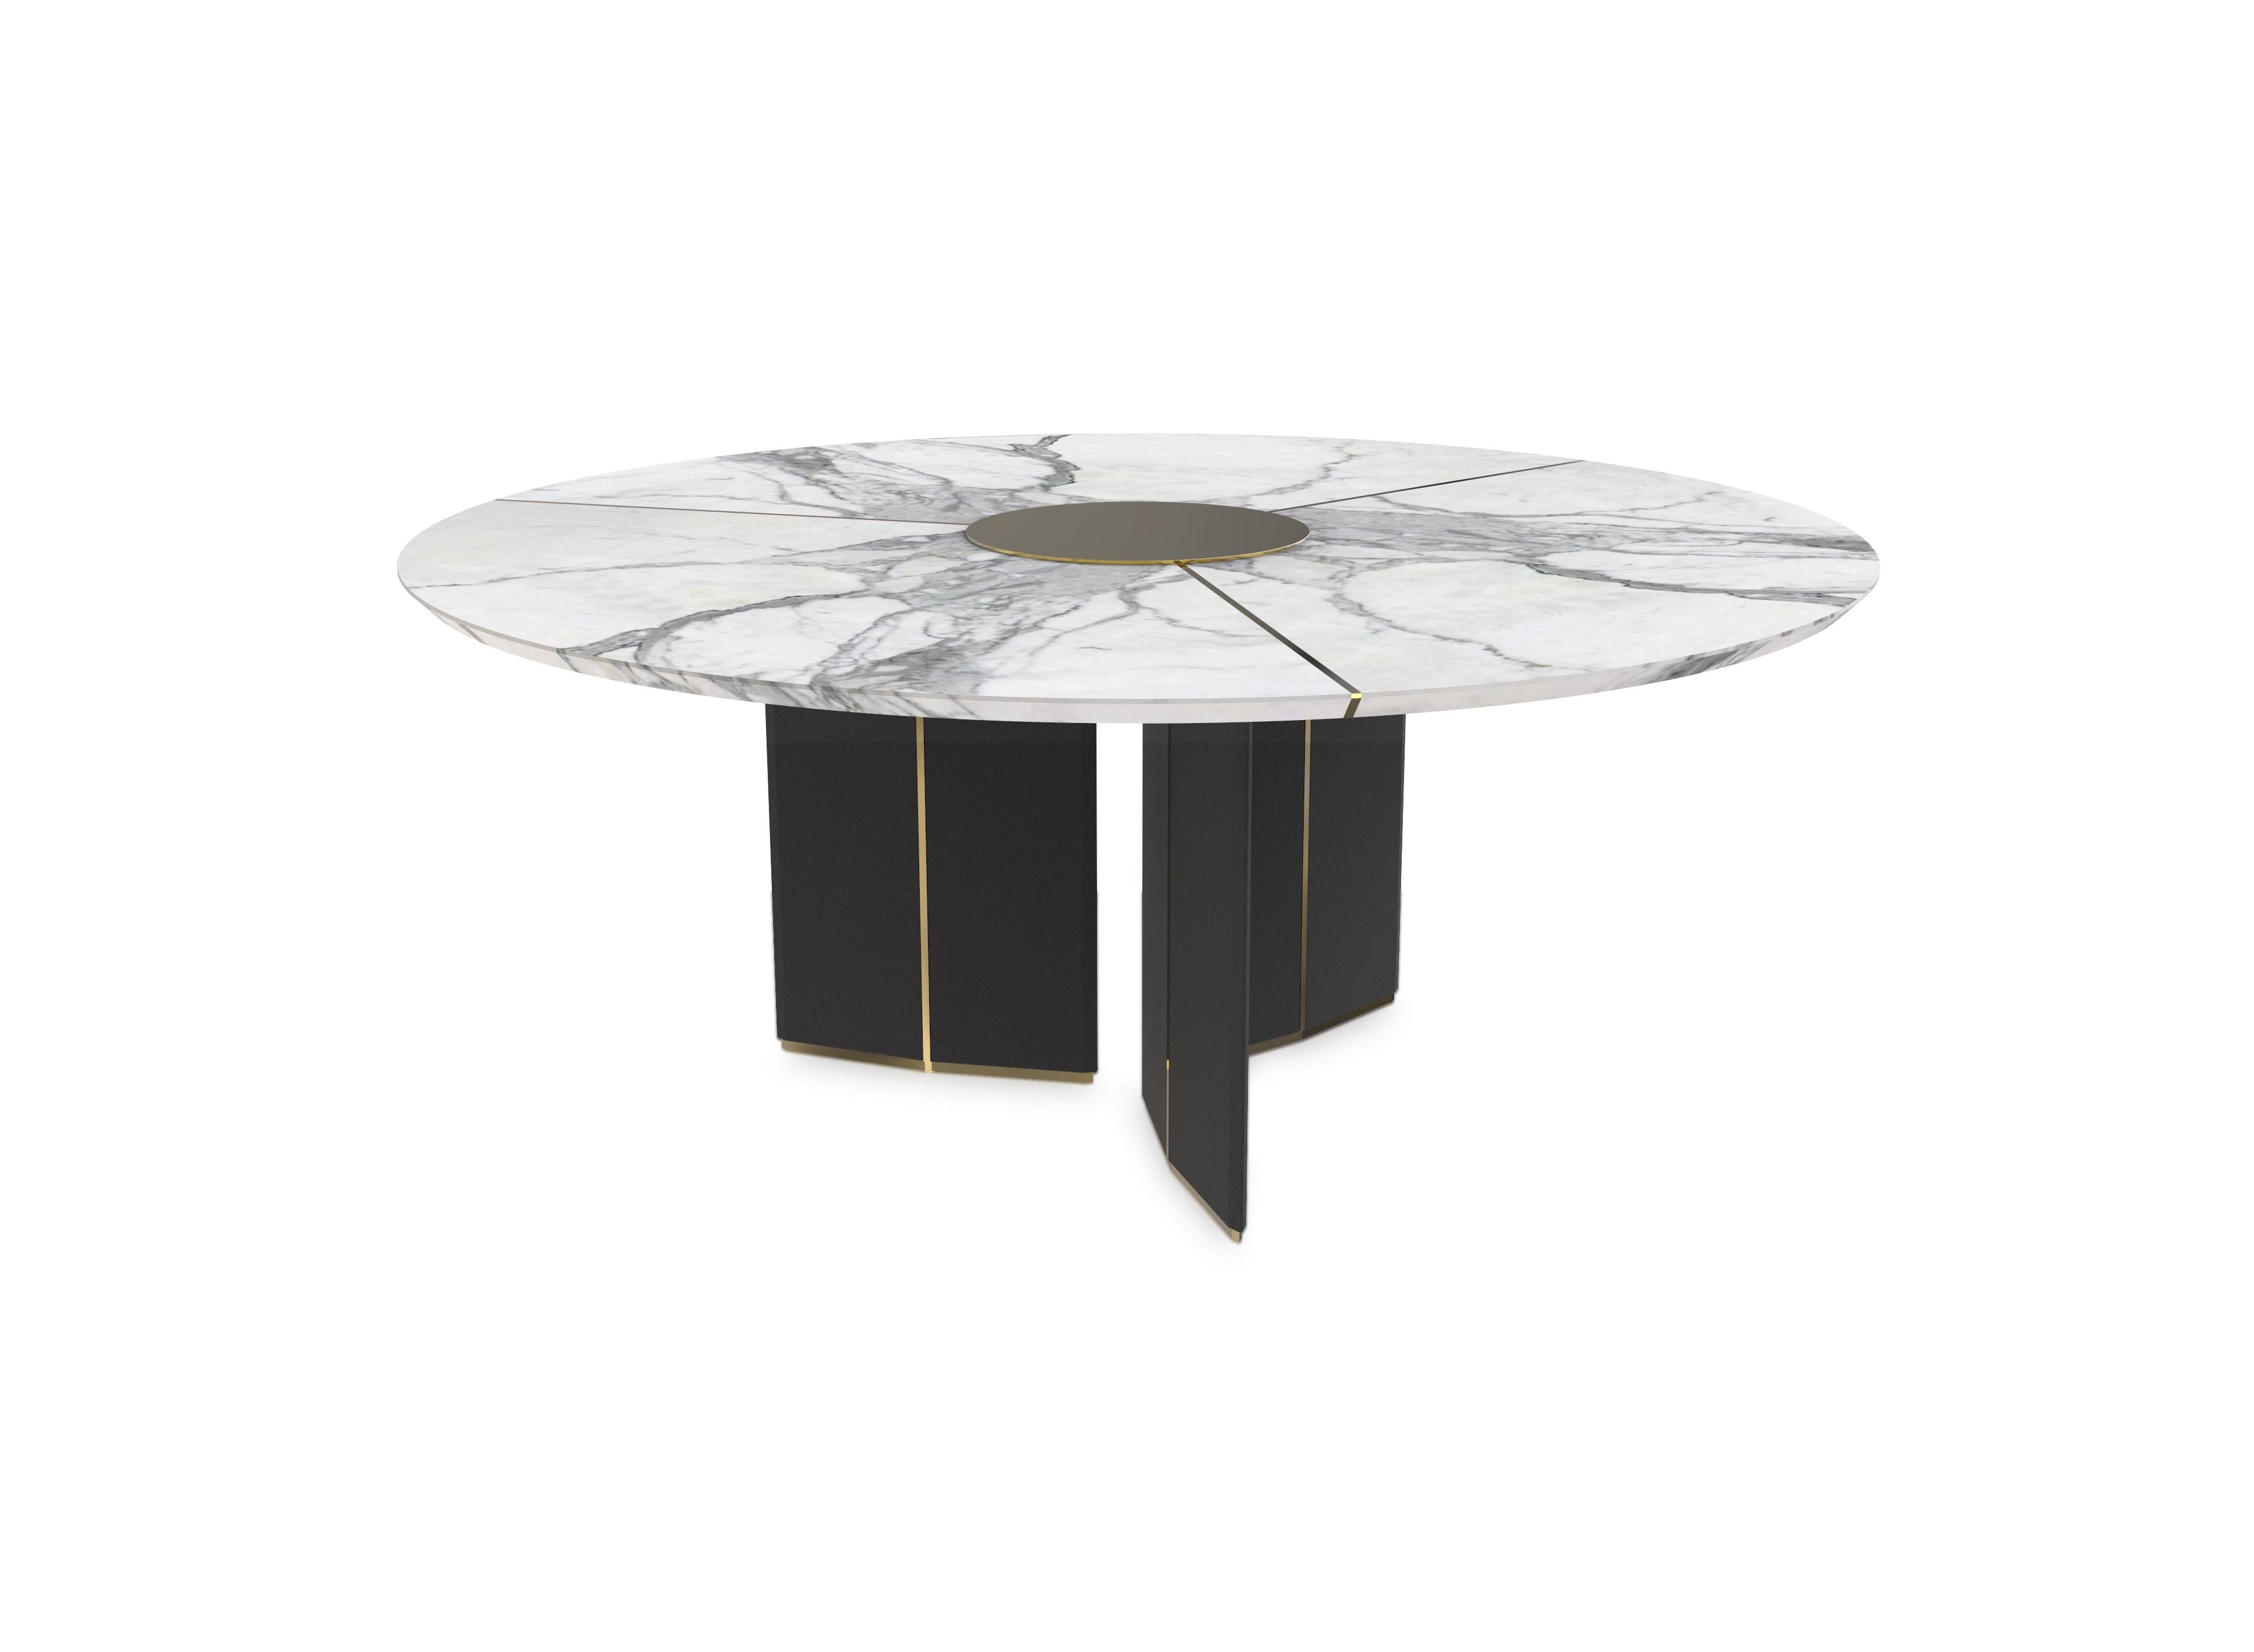 Algerone ist ein opulenter runder Esstisch, der von architektonischen Elementen inspiriert ist und an die einzigartige Stärke und Klasse erinnert, die nur Marmor hat. Die runde Platte aus Carrara-Marmor wird von einem schlanken Sockel getragen, der